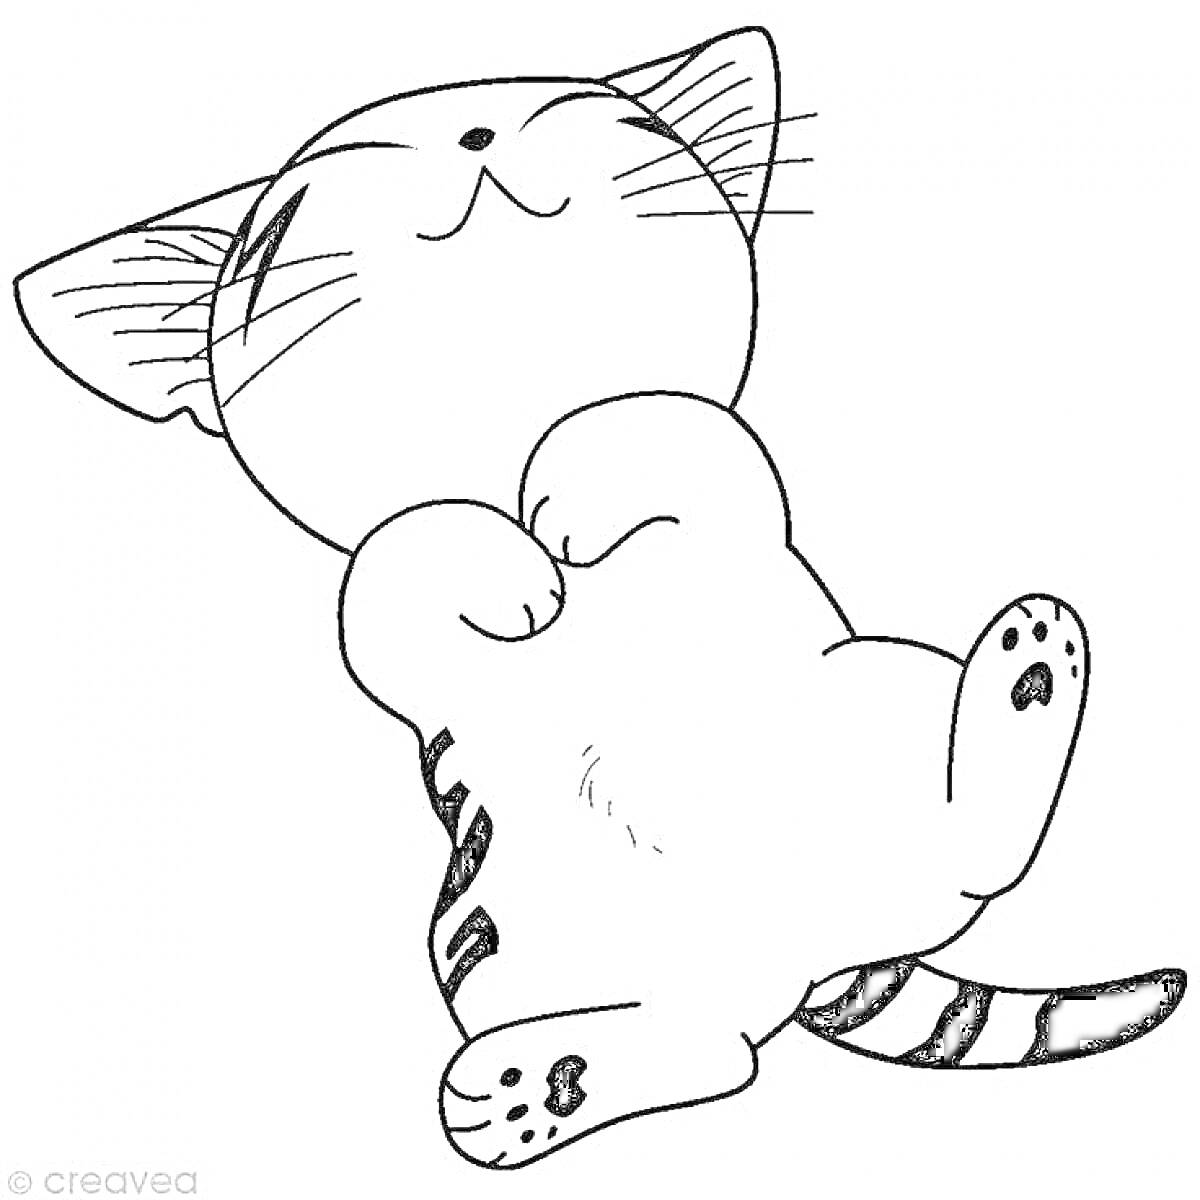 Котик, лежащий на спине с закрытыми глазами и поднятыми передними лапками